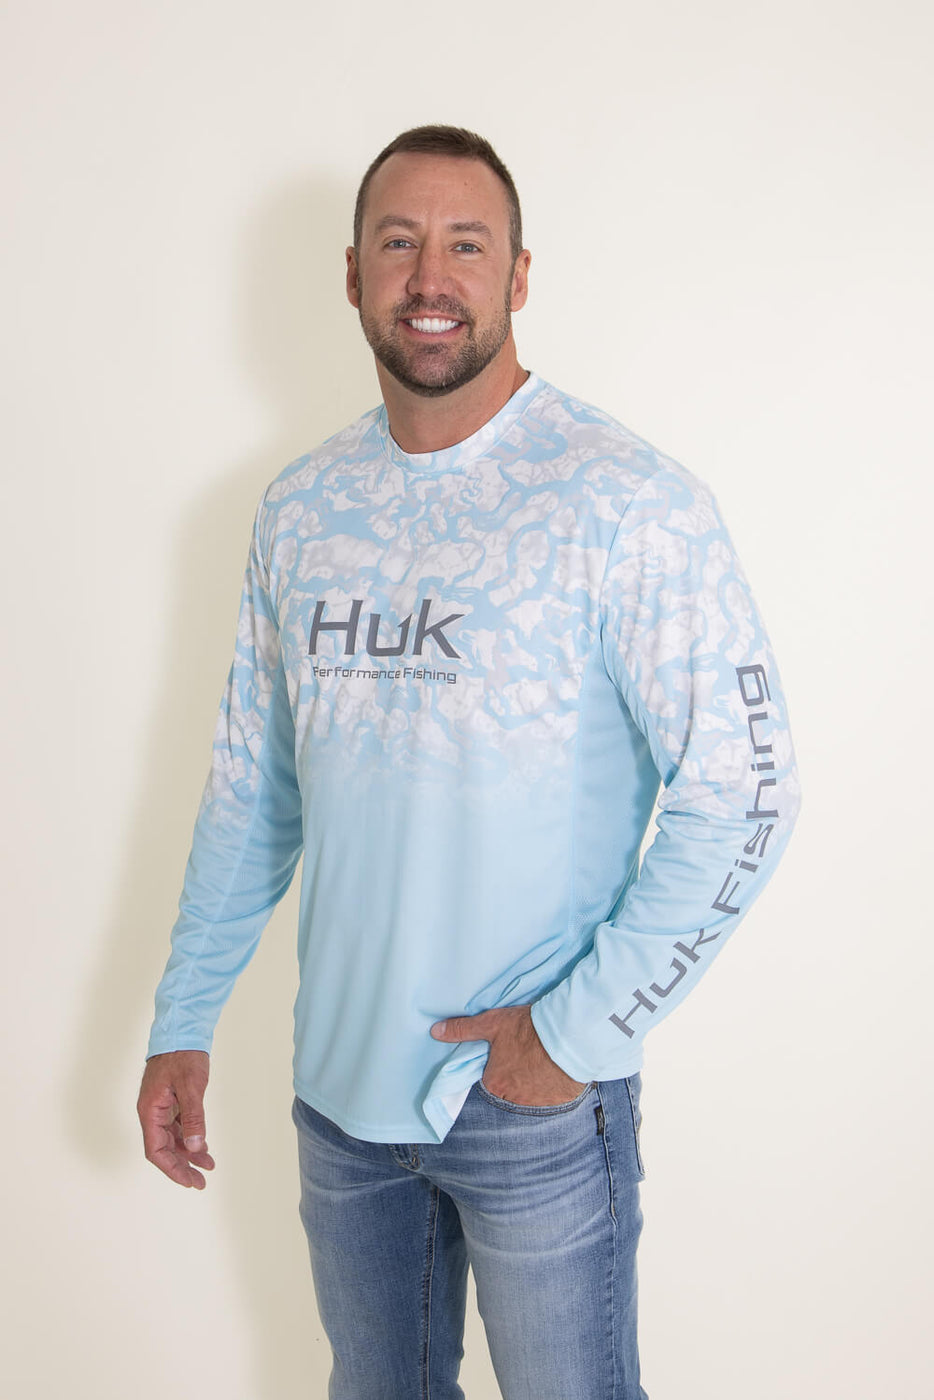 Huk Men's Performance Fishing Shirt, Blue, size L F5